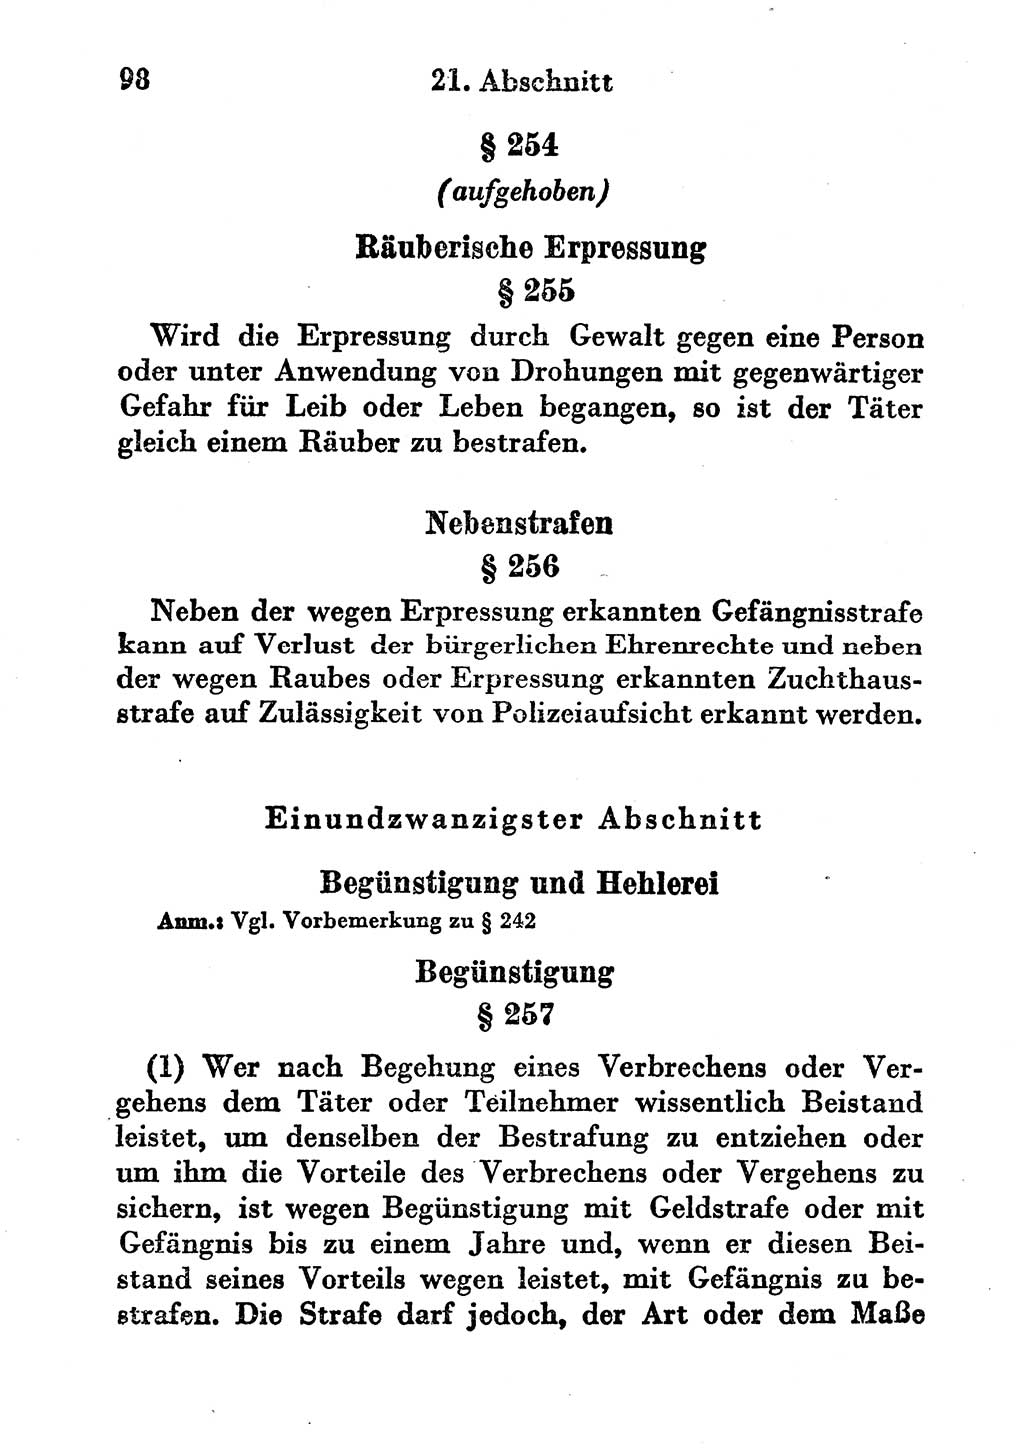 Strafgesetzbuch (StGB) und andere Strafgesetze [Deutsche Demokratische Republik (DDR)] 1956, Seite 98 (StGB Strafges. DDR 1956, S. 98)